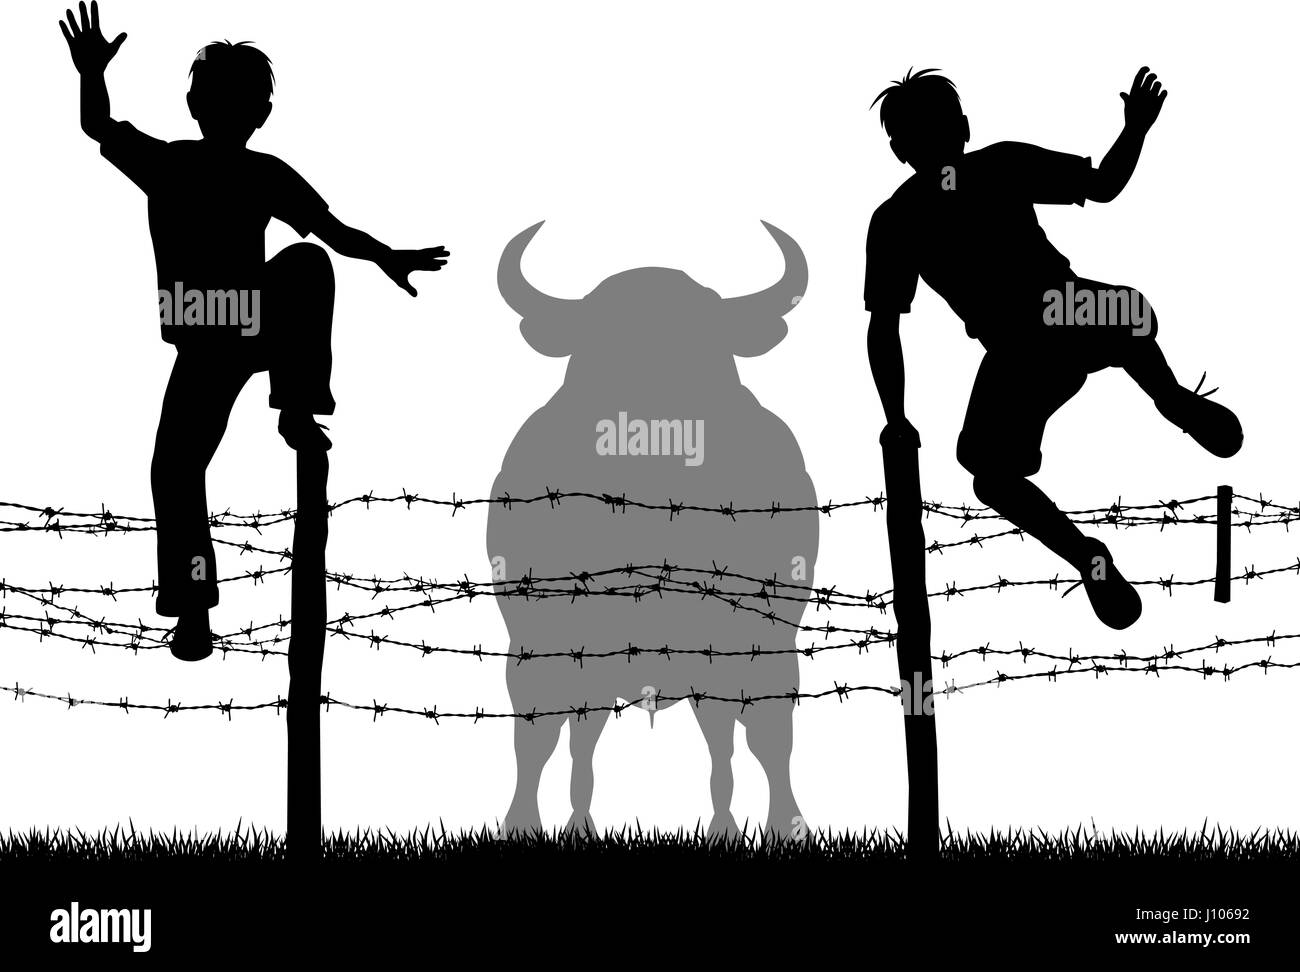 Vettore modificabile sagome di due ragazzi saltando su un filo spinato per sfuggire un toro con tutti i dati come oggetti separati Illustrazione Vettoriale